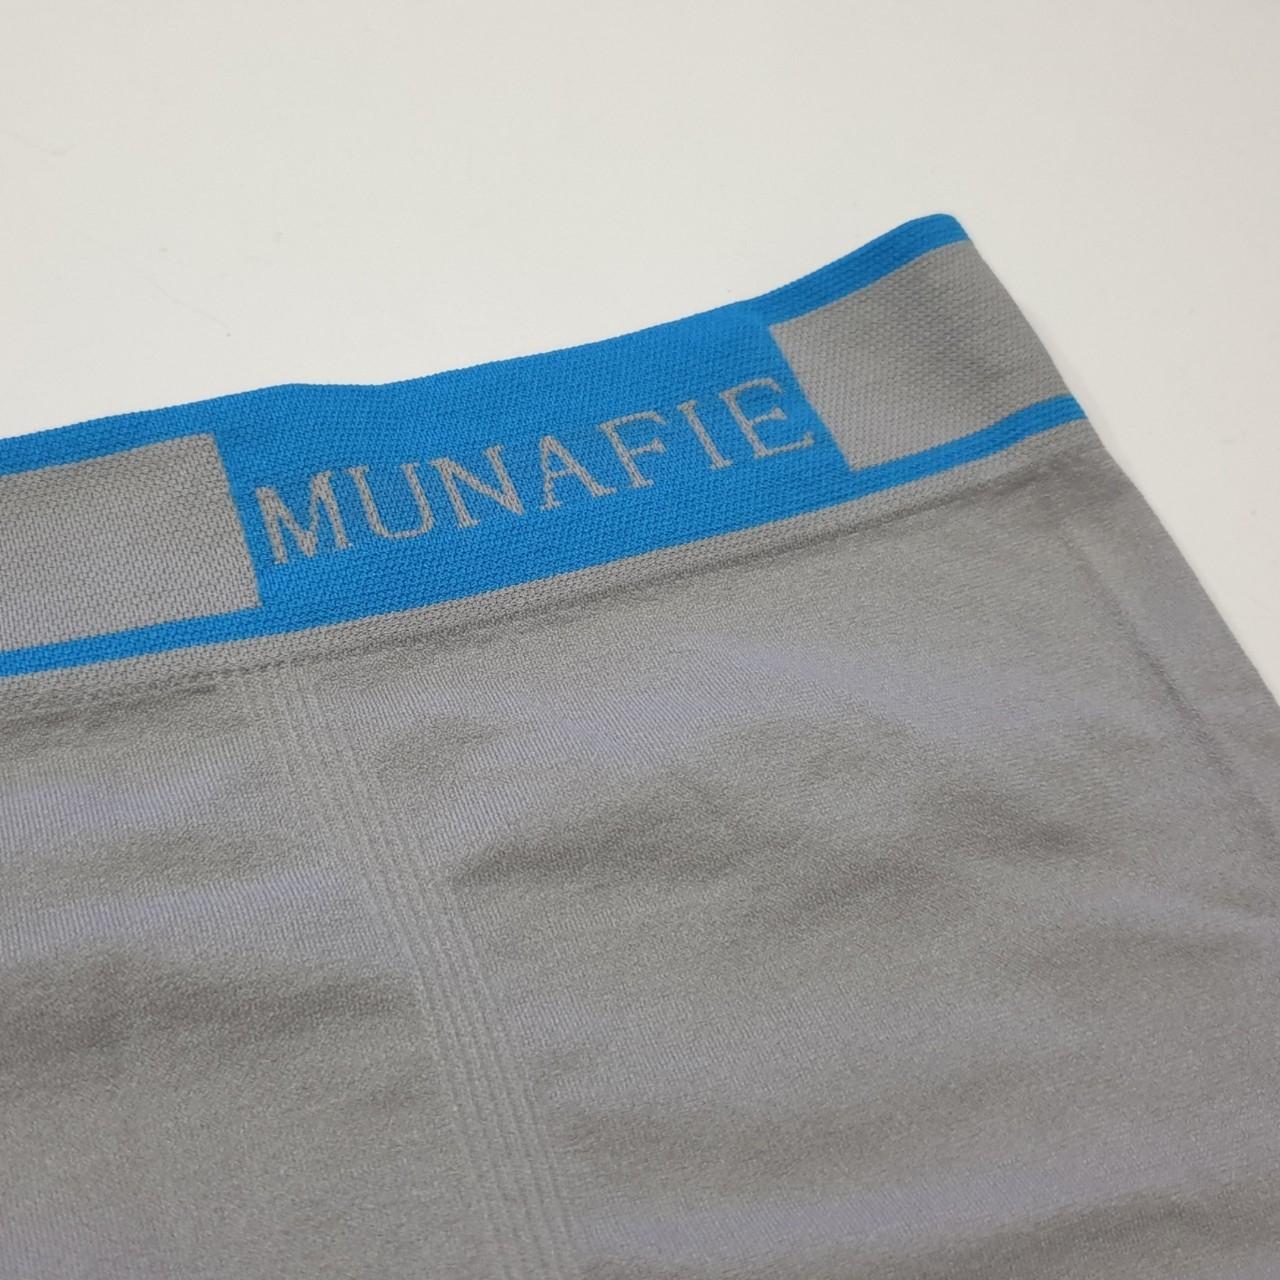 กางเกงในชาย รุ่น Limited Boxer บ๊อกเซอร์ Munafie (ของแท้) แบรนด์ญี่ปุ่น ผ้านิ่ม ยืดหยุ่นสูง ใส่ซองทุกตัว